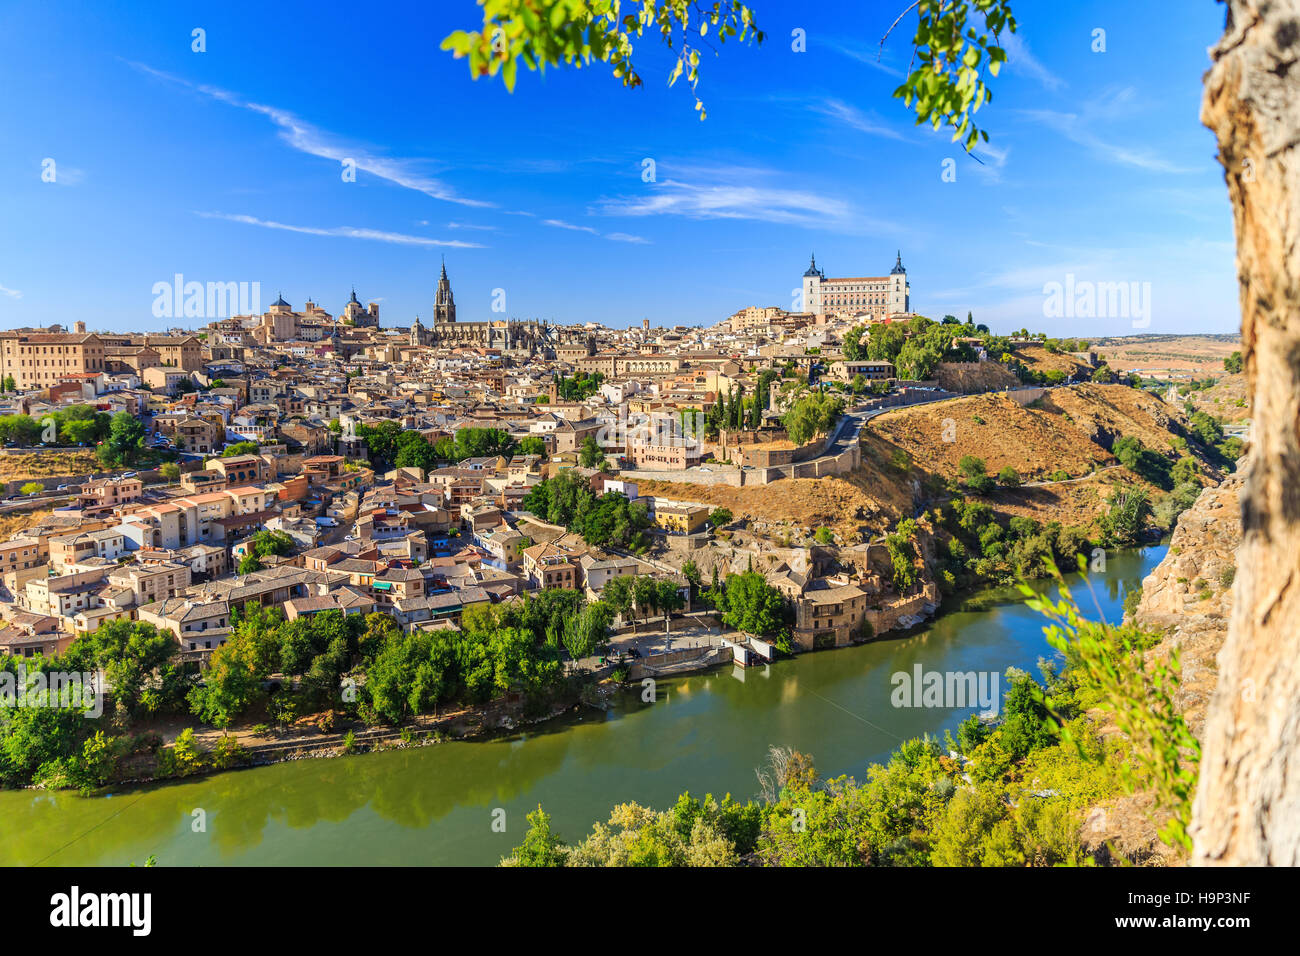 Toledo, España. Vista panorámica de la ciudad vieja y su alcázar (palacio real). Foto de stock